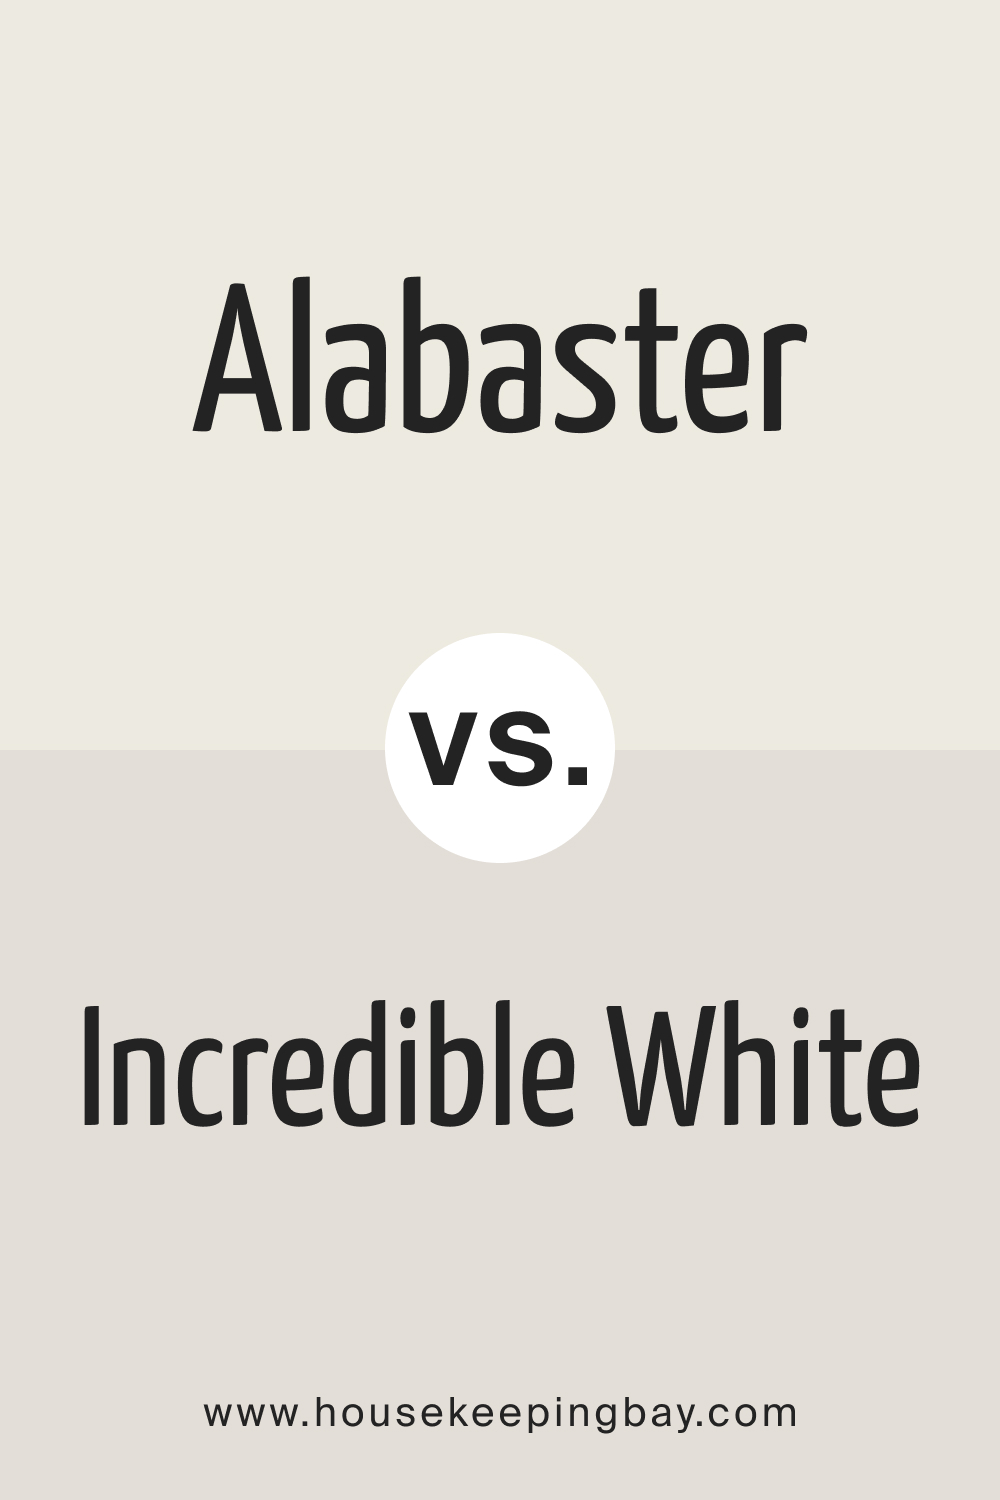 Alabaster vs. Incredible White